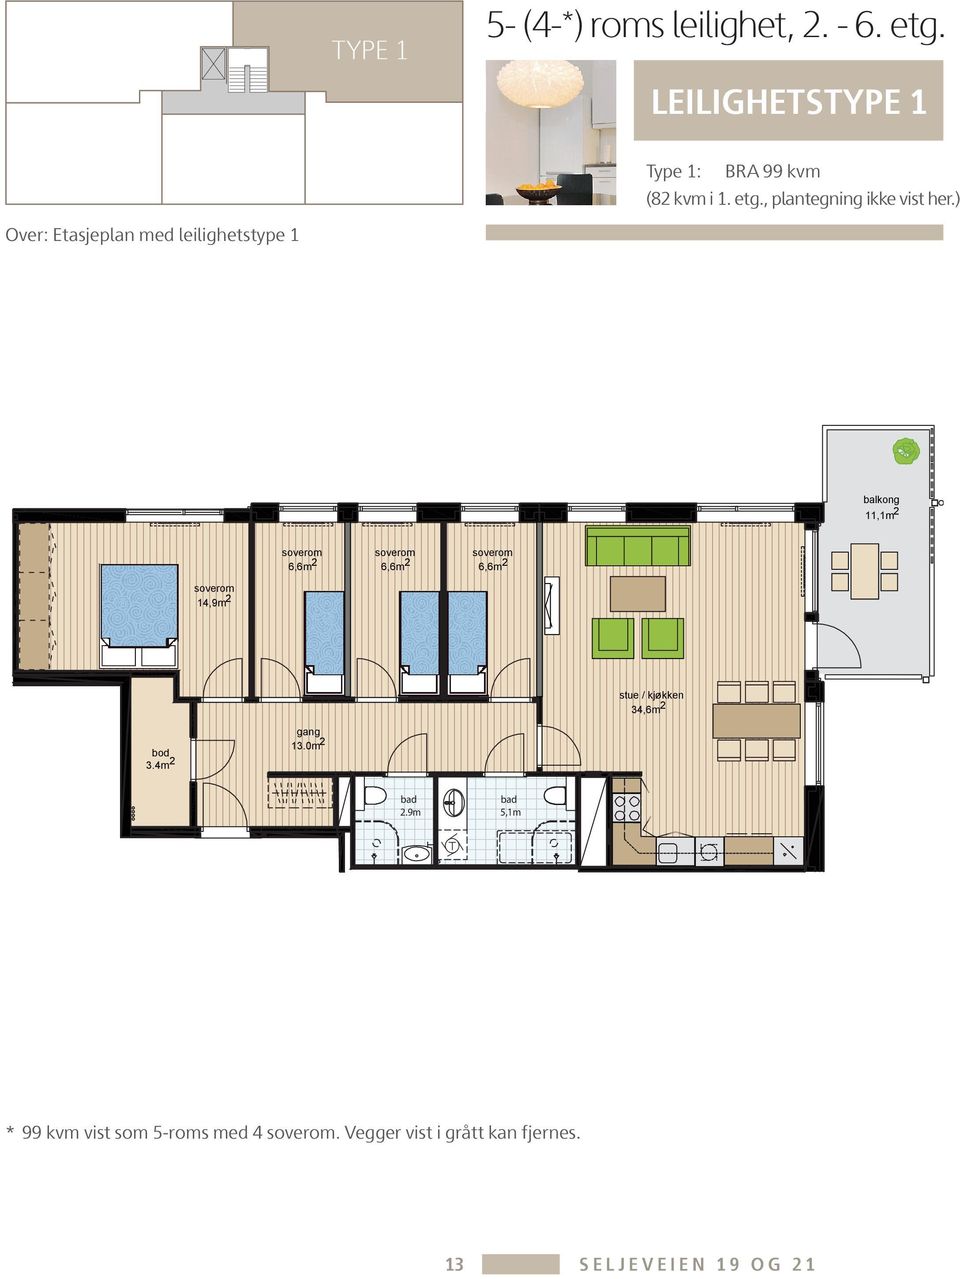 ) Over: Etasjeplan med leilighetstype 1 balkong 11,1m 2 6,6m 2 6,6m 2 6,6m 2 14,9m 2 stue